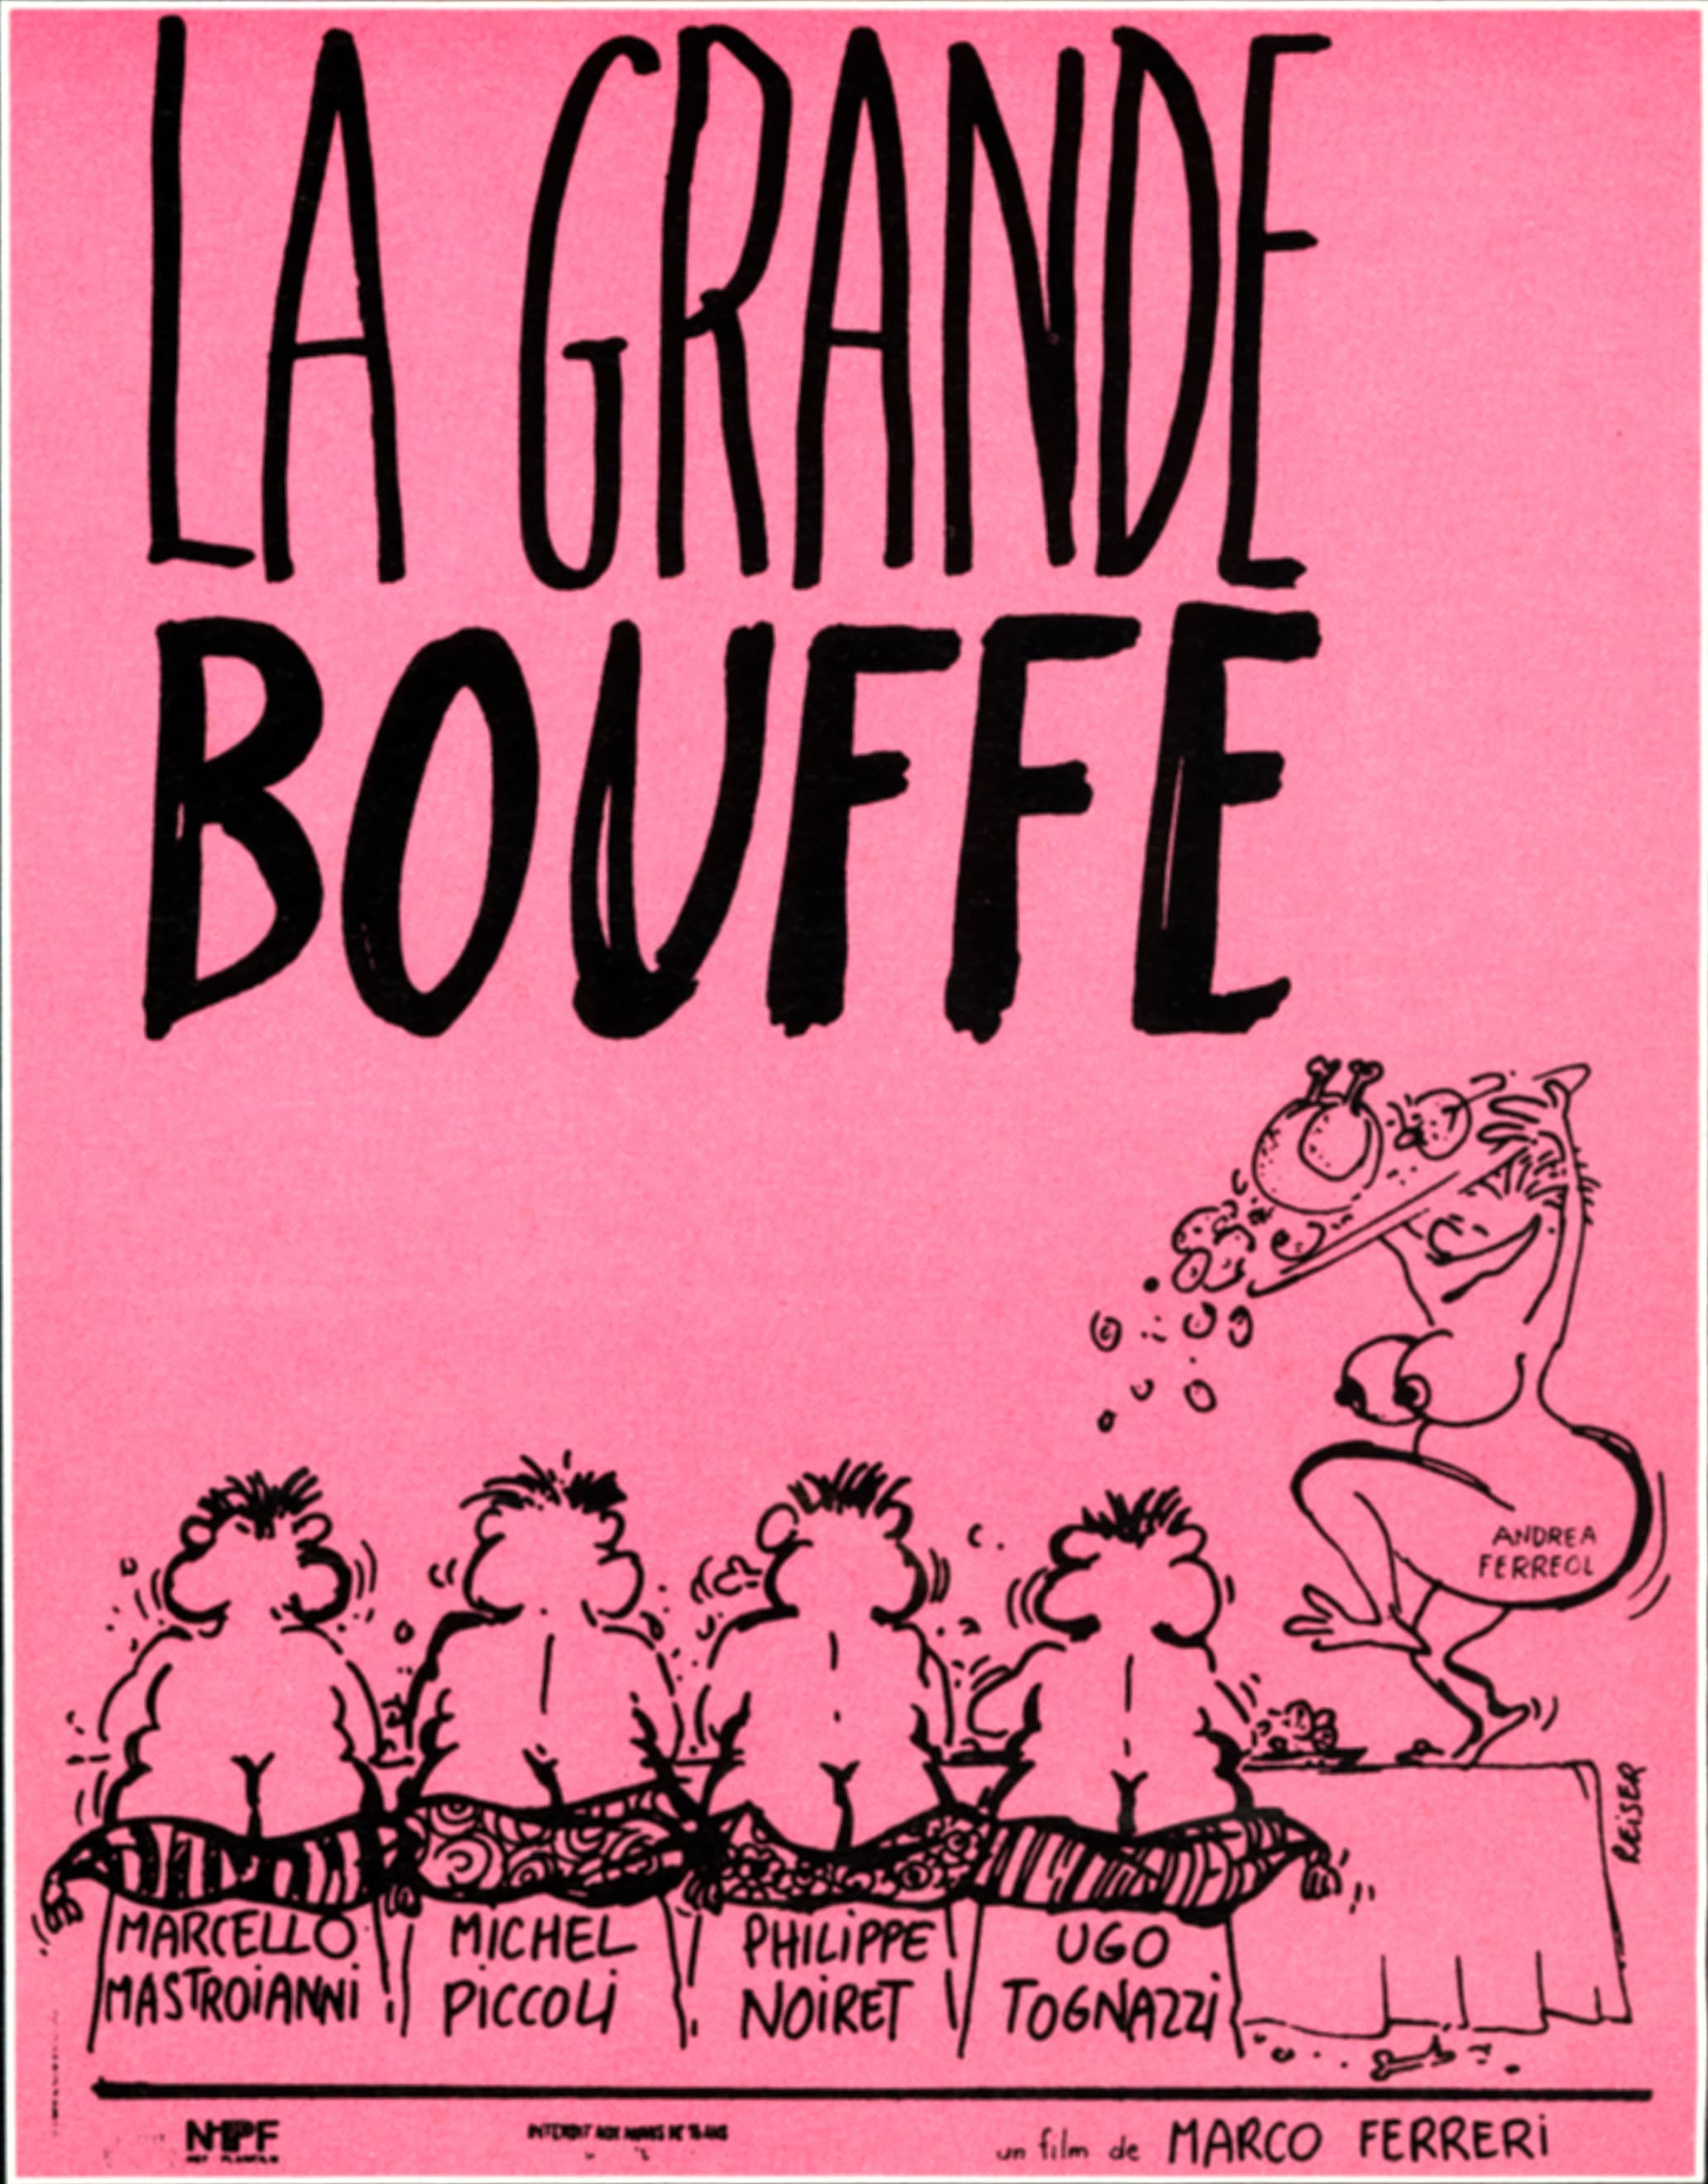 La grande abbuffata di Marco Ferreri 1973 locandina francese